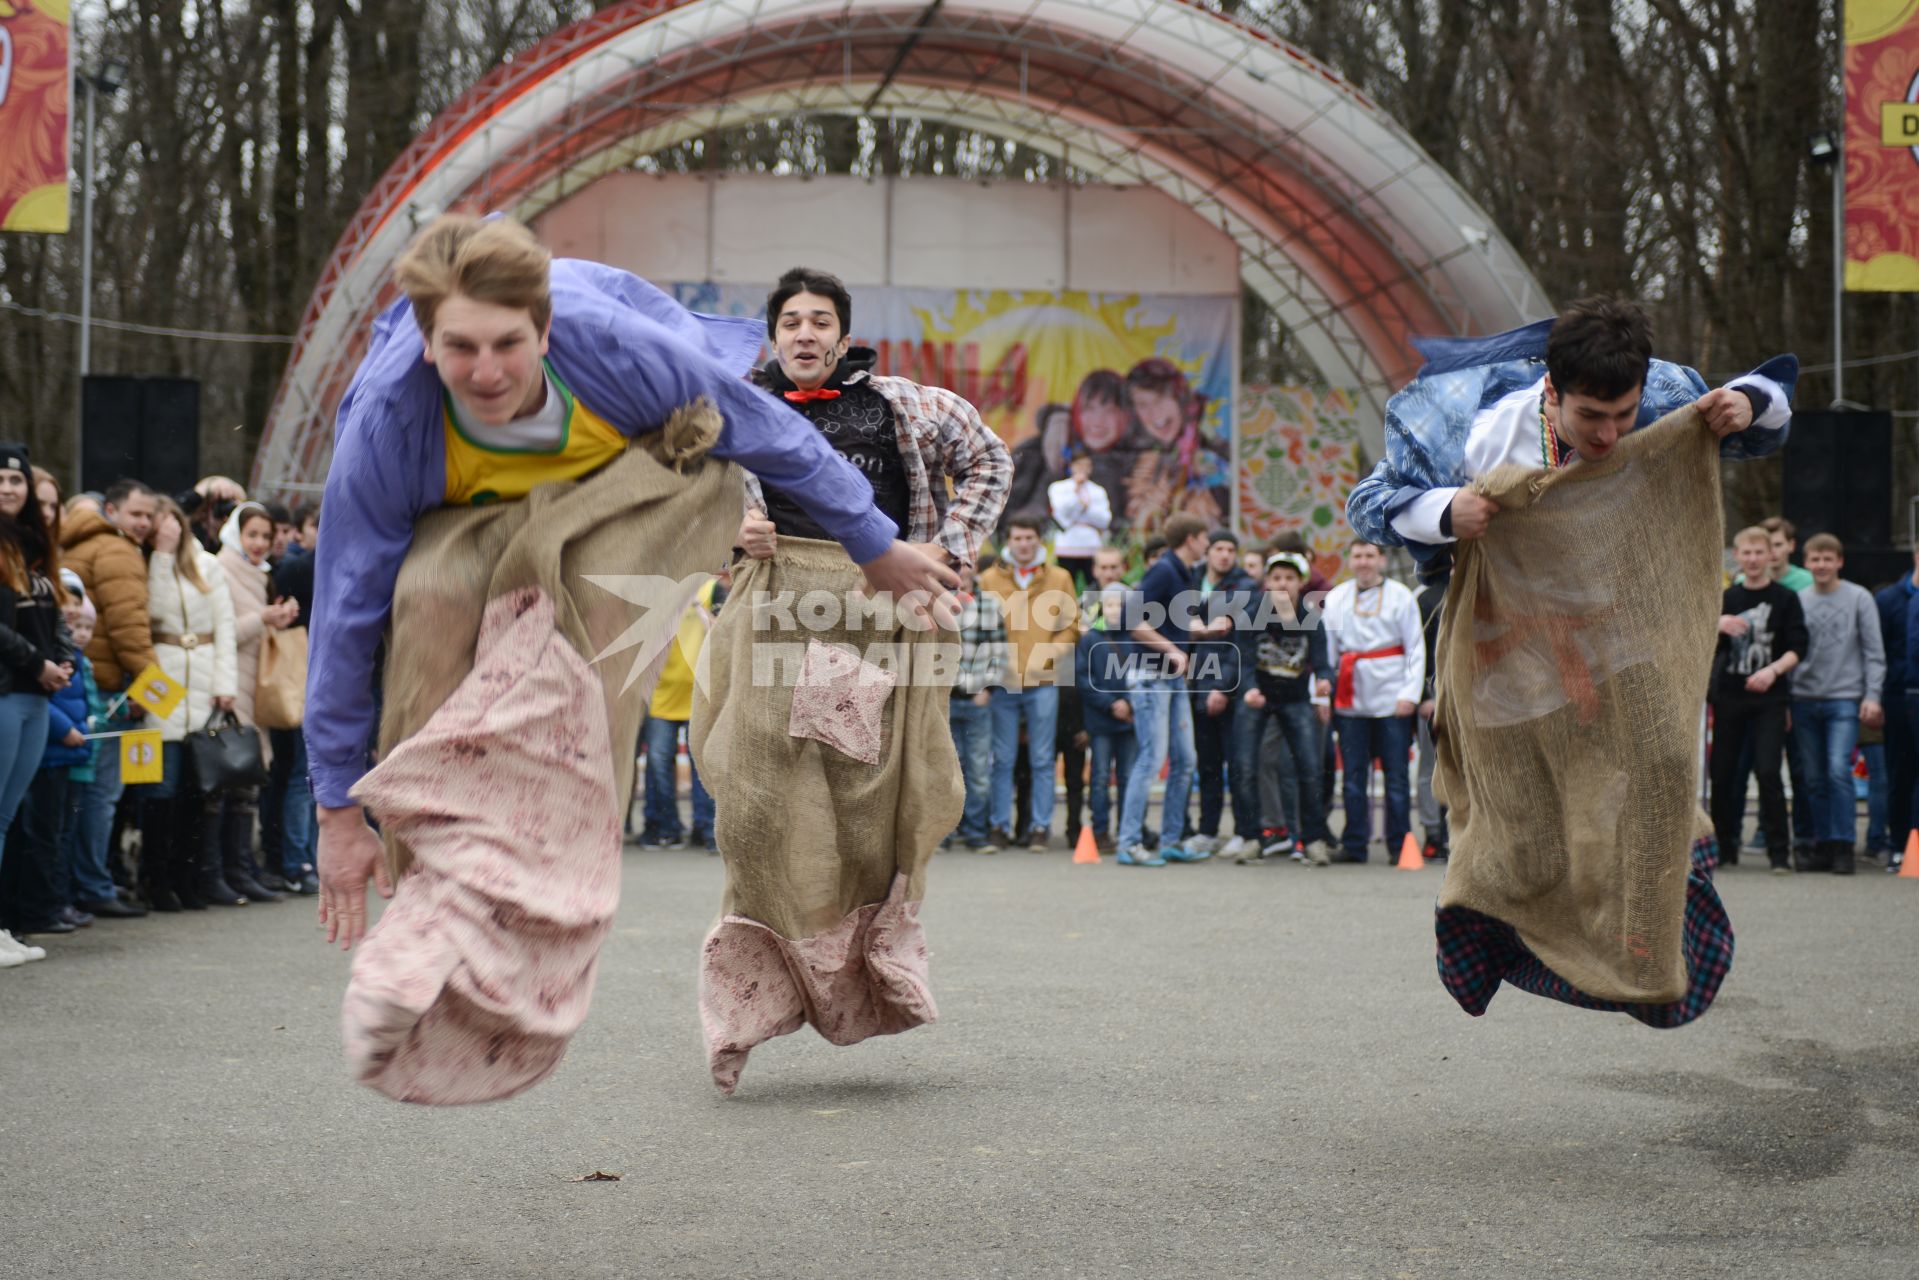 Ставрополь. Народная забава - бег в мешках  во время празднования Широкой Масленицы.